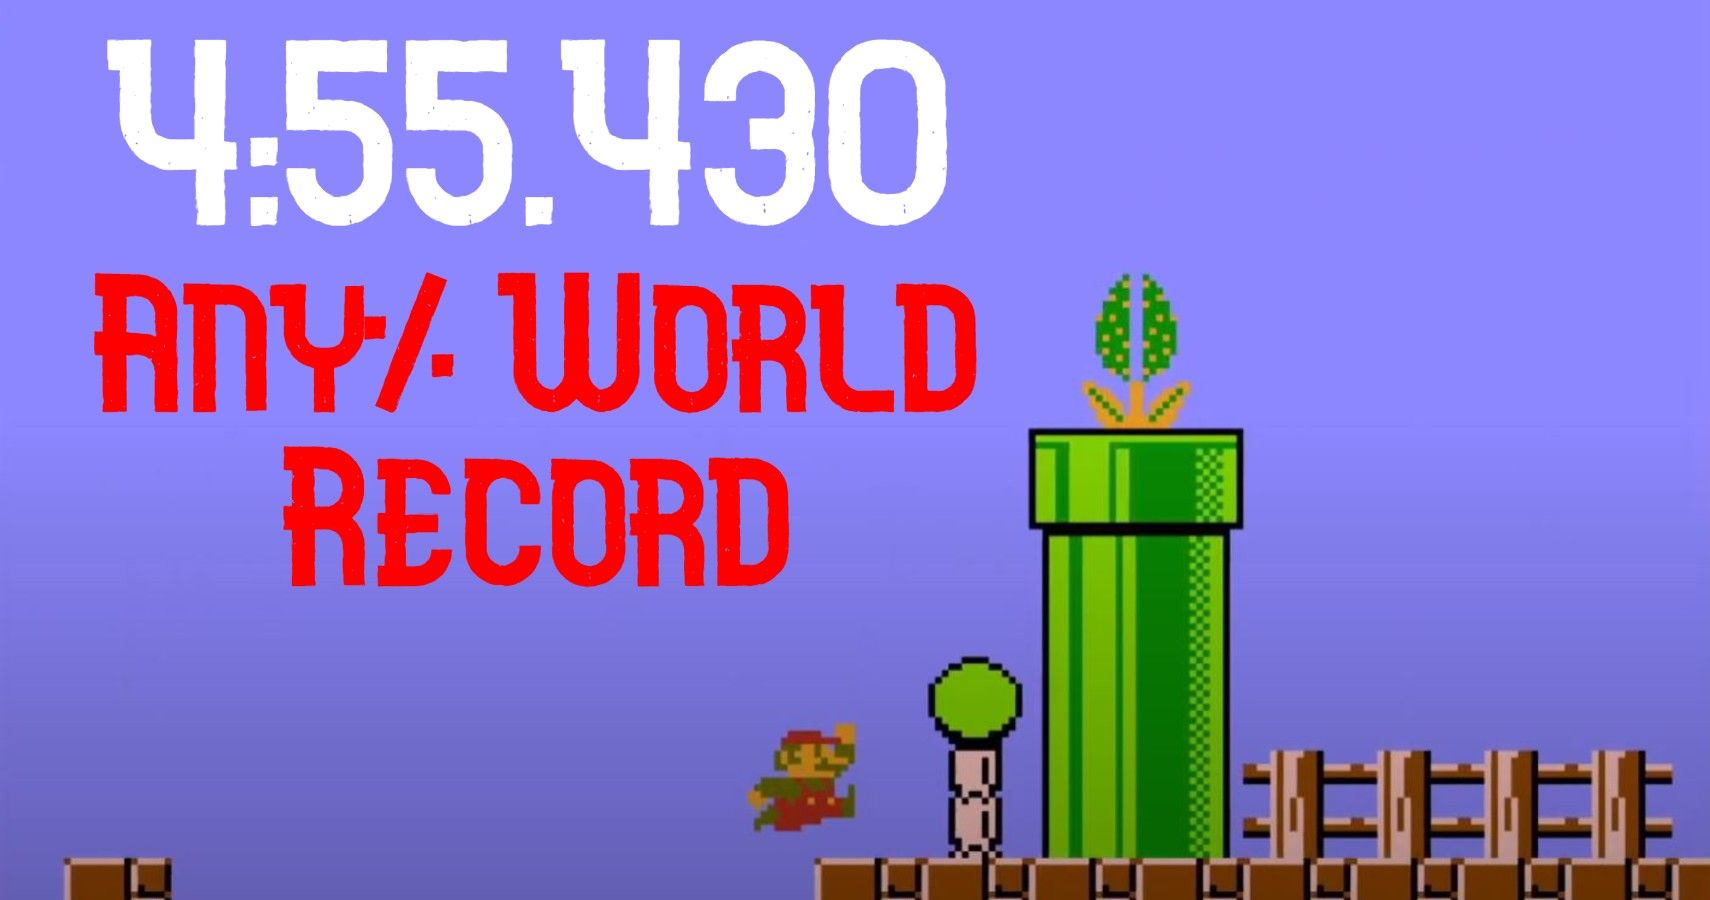 Super Mario Bros Any% World Record